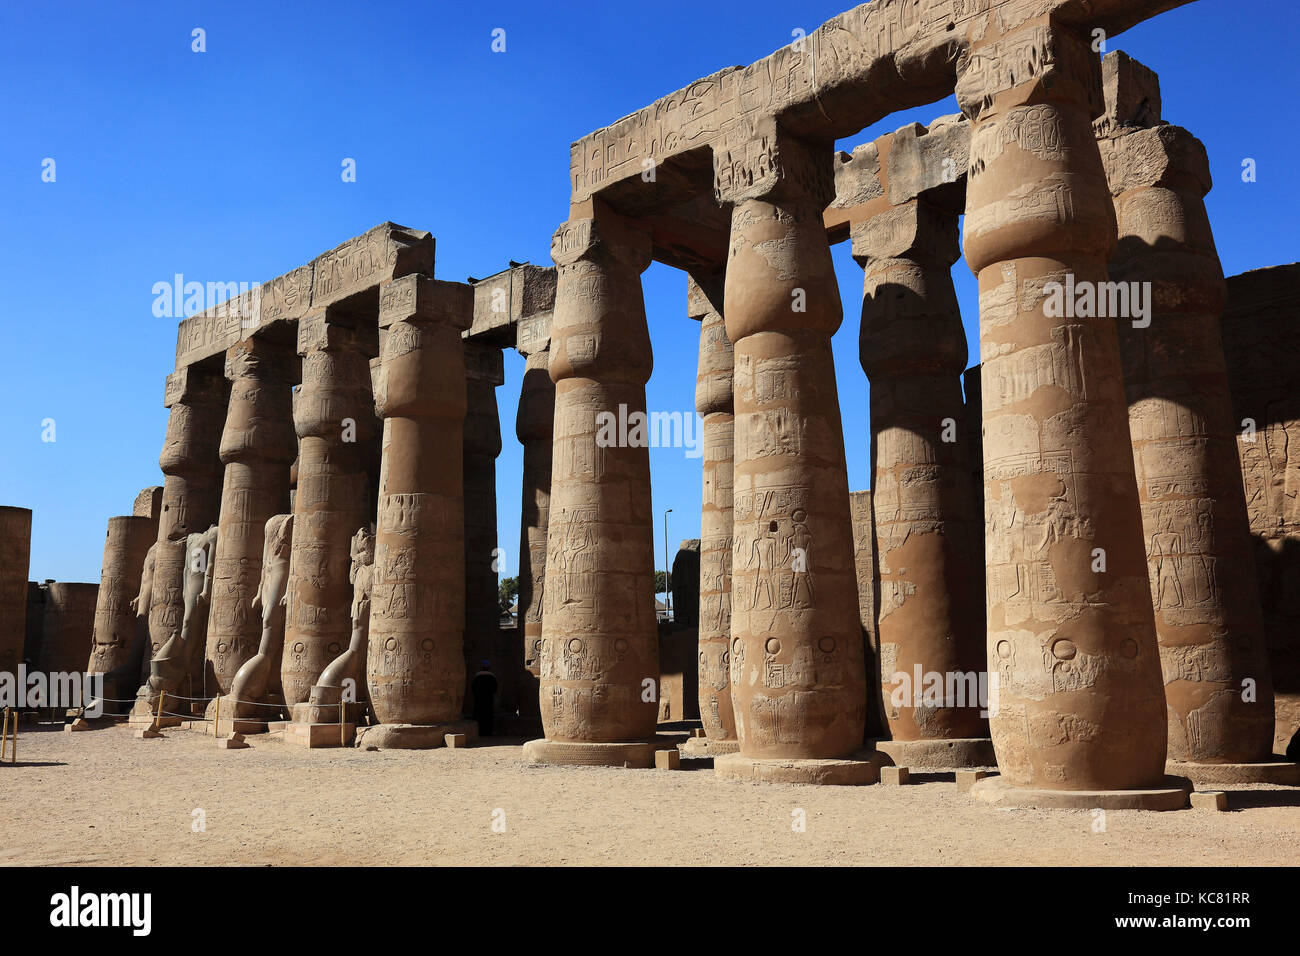 El Templo de Luxor, el Colonnade, África, en el alto Egipto, patrimonio de la humanidad por la UNESCO Foto de stock